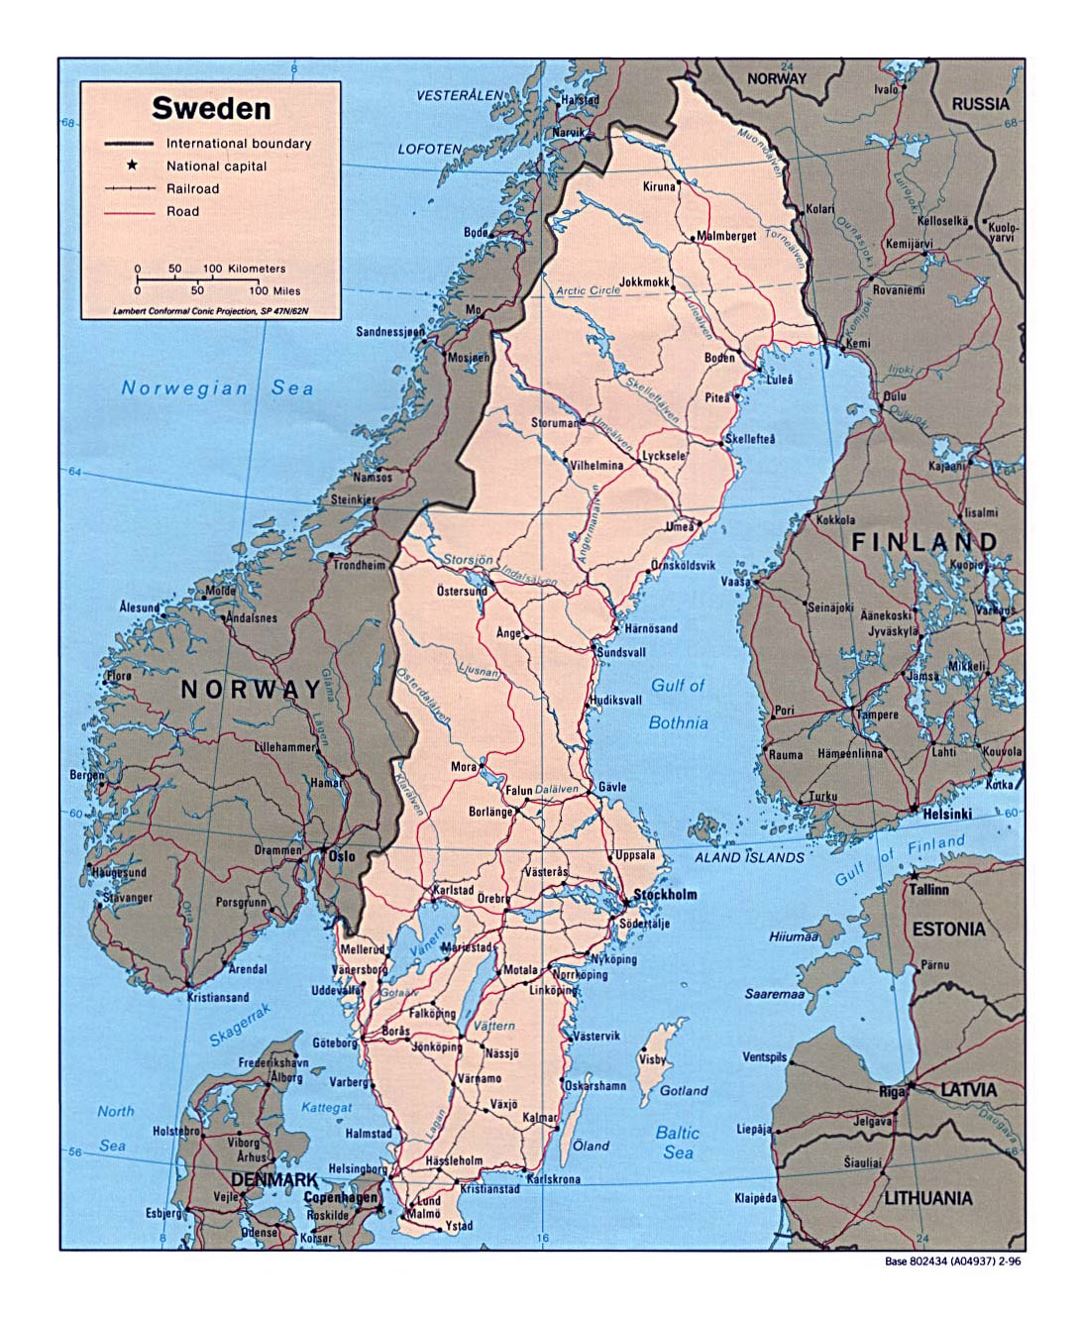 Detallado mapa político de Suecia con carreteras, ferrocarriles y ciudades principales - 1996